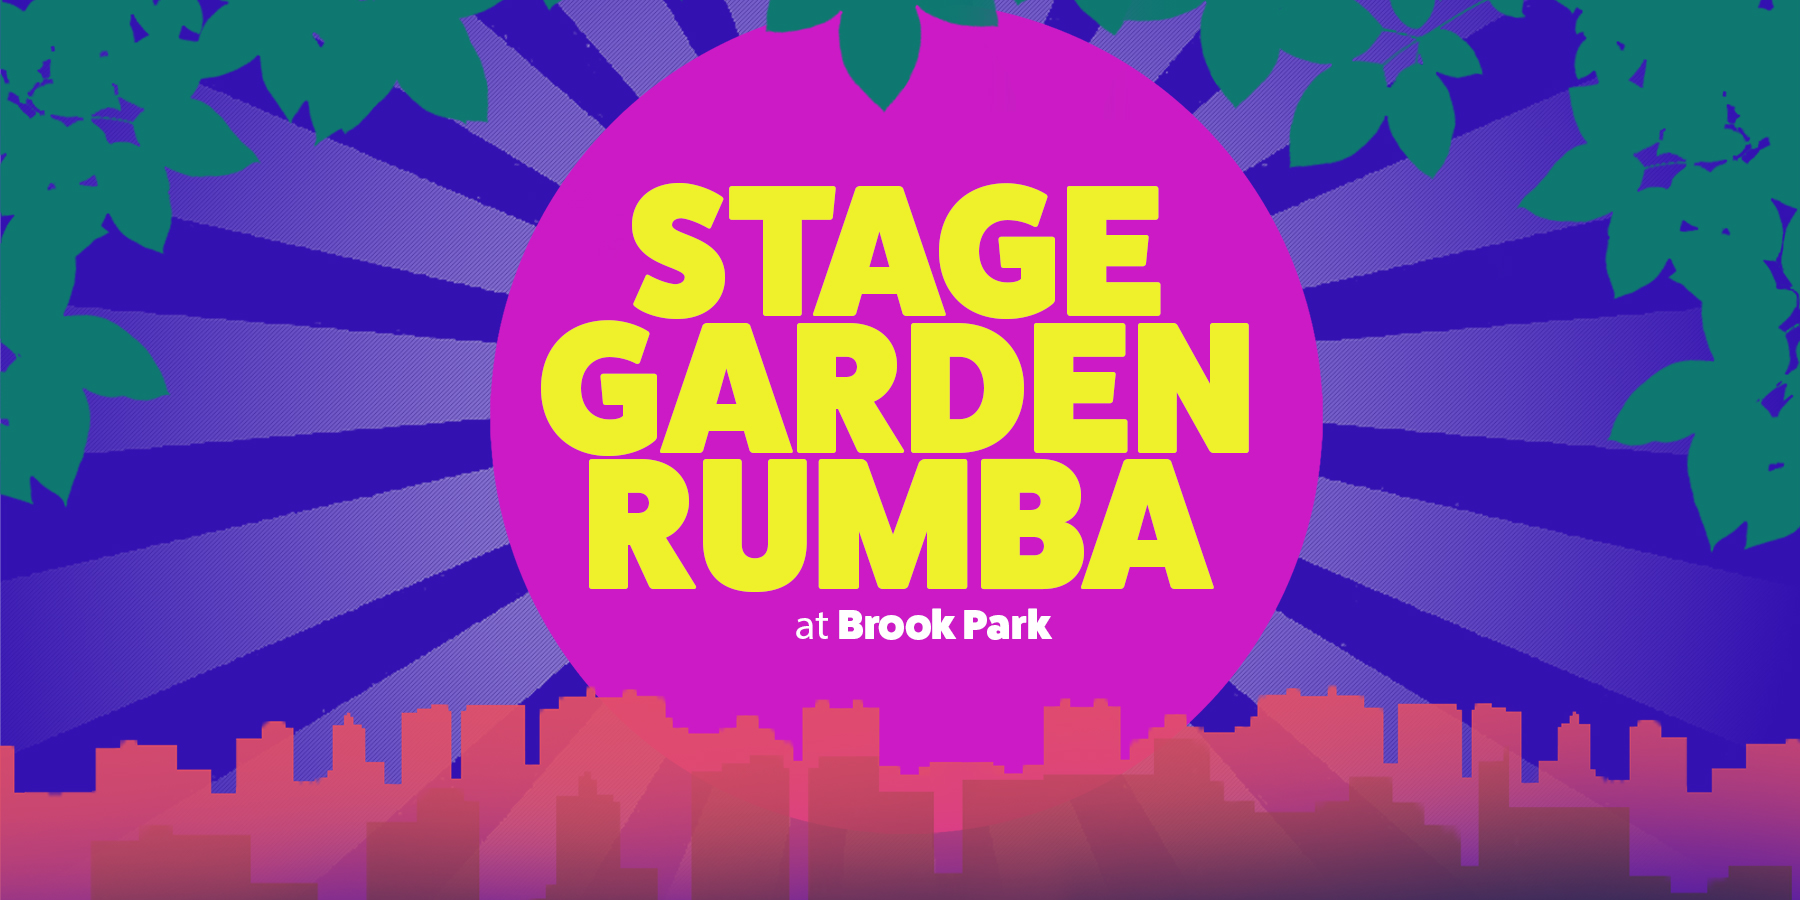 Stage Garden Rumba - Outdoor Summer Arts